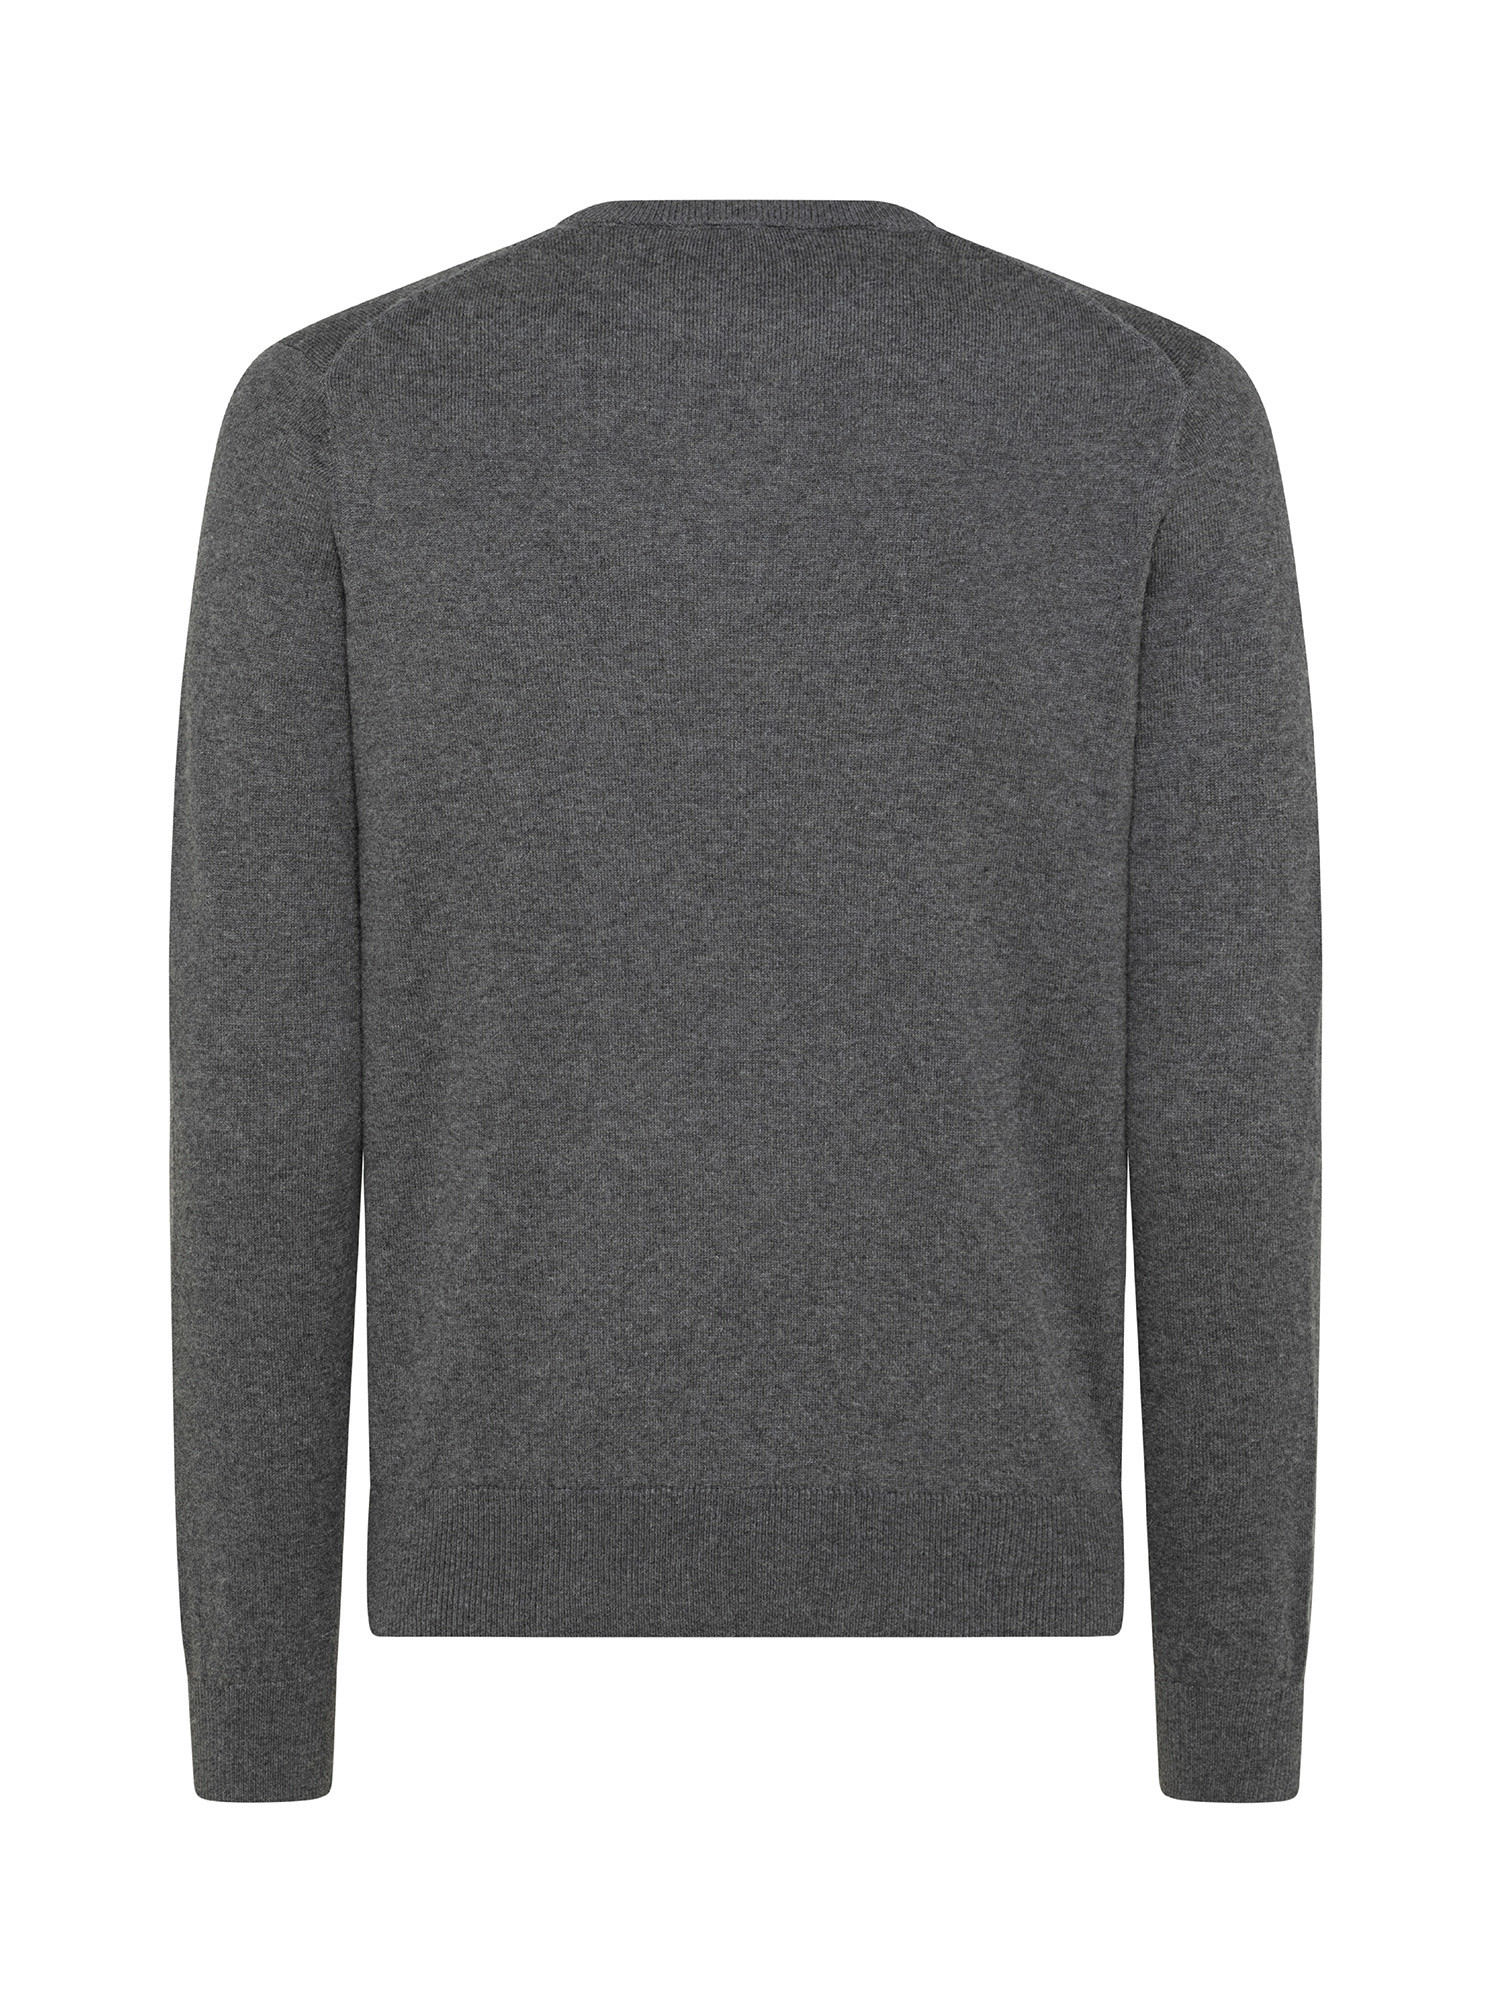 Organic cotton sweatshirt, Dark Grey, large image number 1